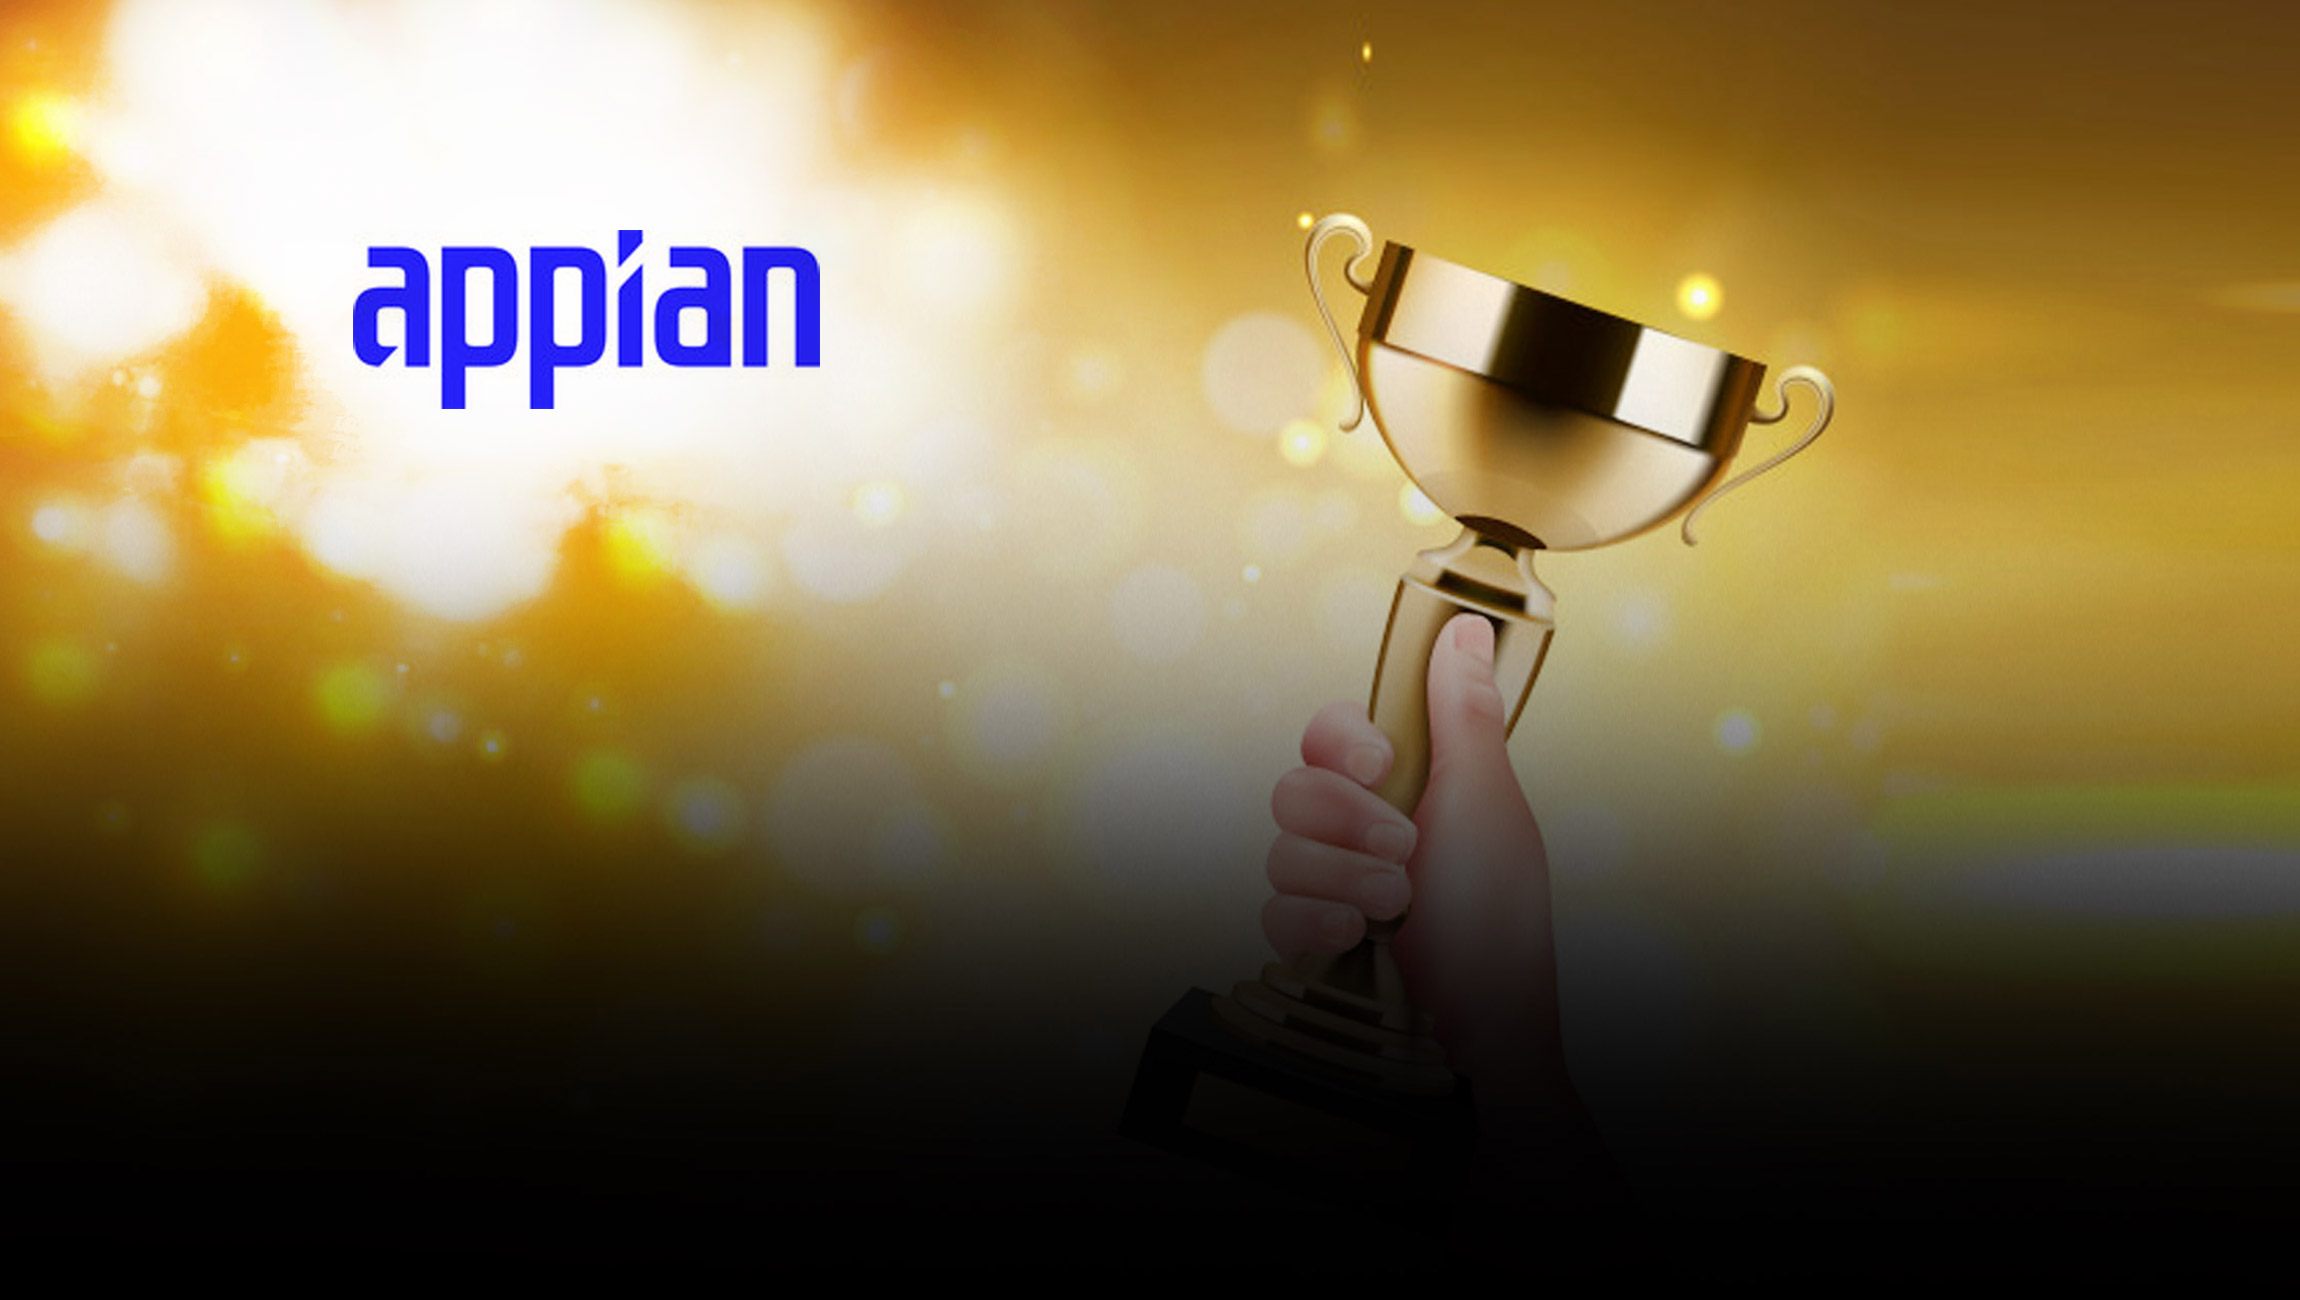 2021-Appian-Partner-Award-Winners-Announced